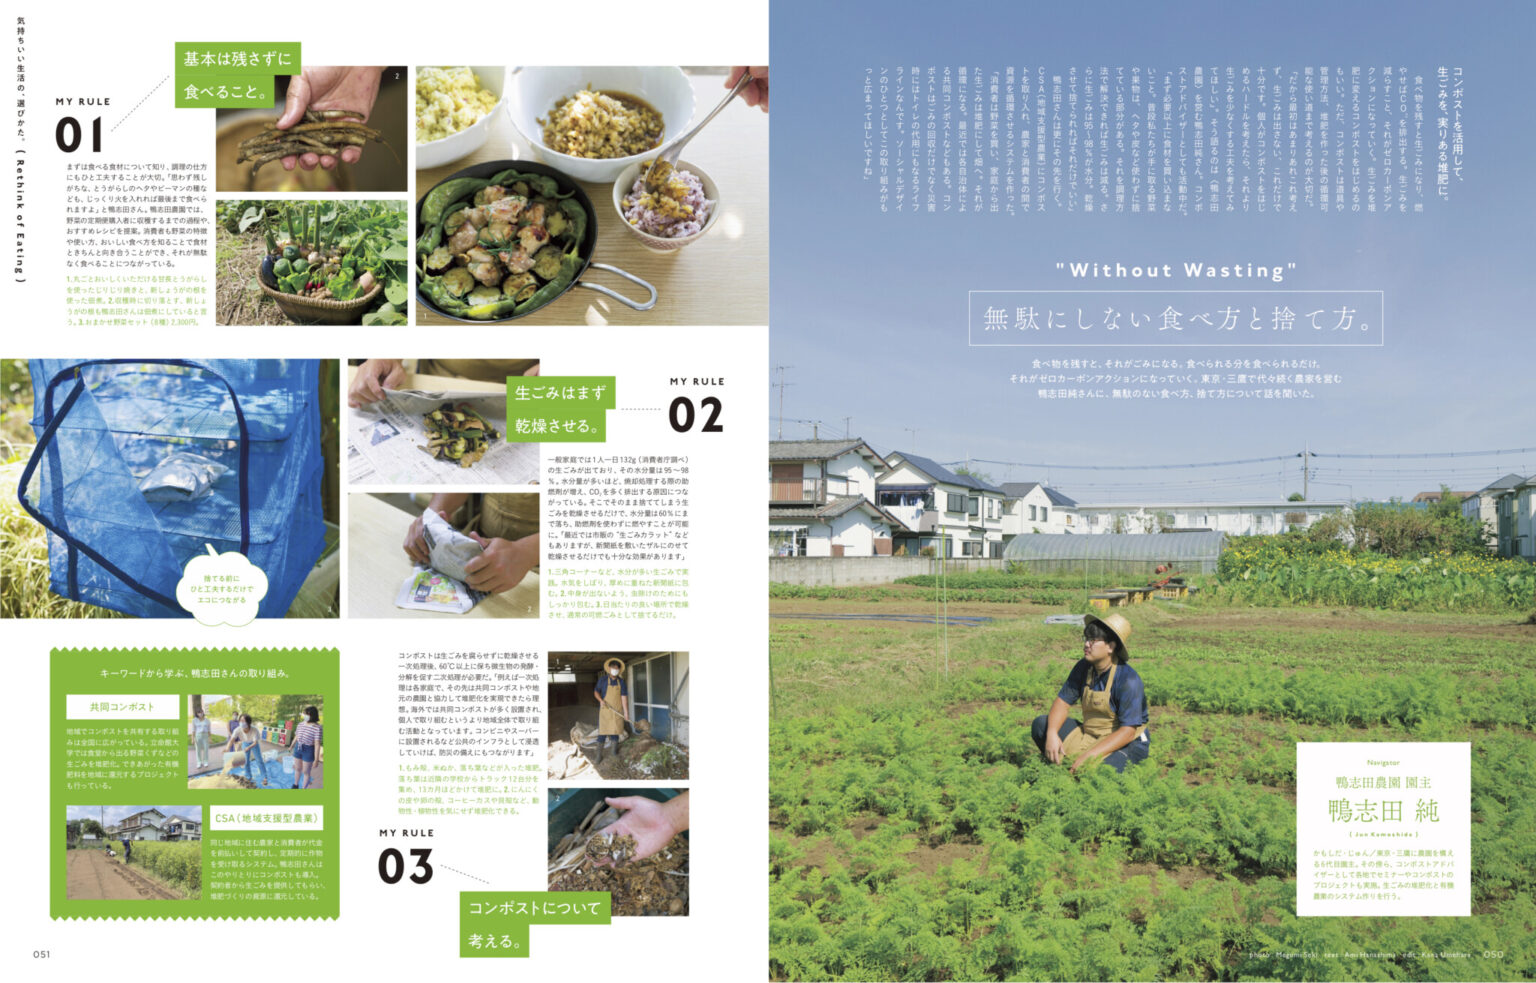 東京・三鷹で農園を営む鴨志田 純さんは、園主の傍らコンポストアドバイザーとして生ごみの堆肥化と有機栽培のシステム作りを行なっています。野菜作りから見えた、ゼロカーボンにつながるマイルールを教えてもらいました。